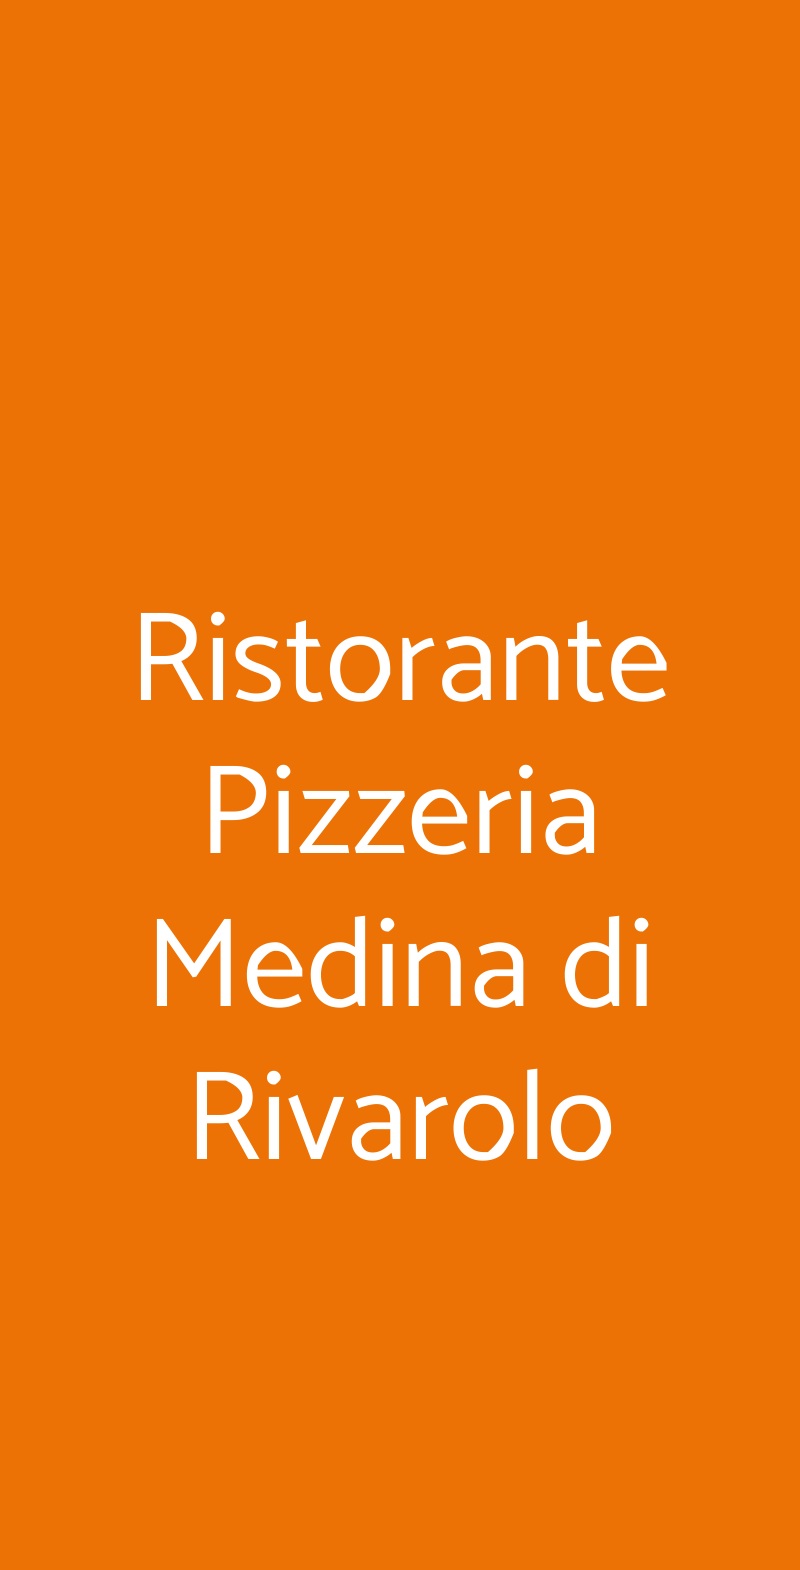 Ristorante Pizzeria Medina di Rivarolo Rivarolo Canavese menù 1 pagina